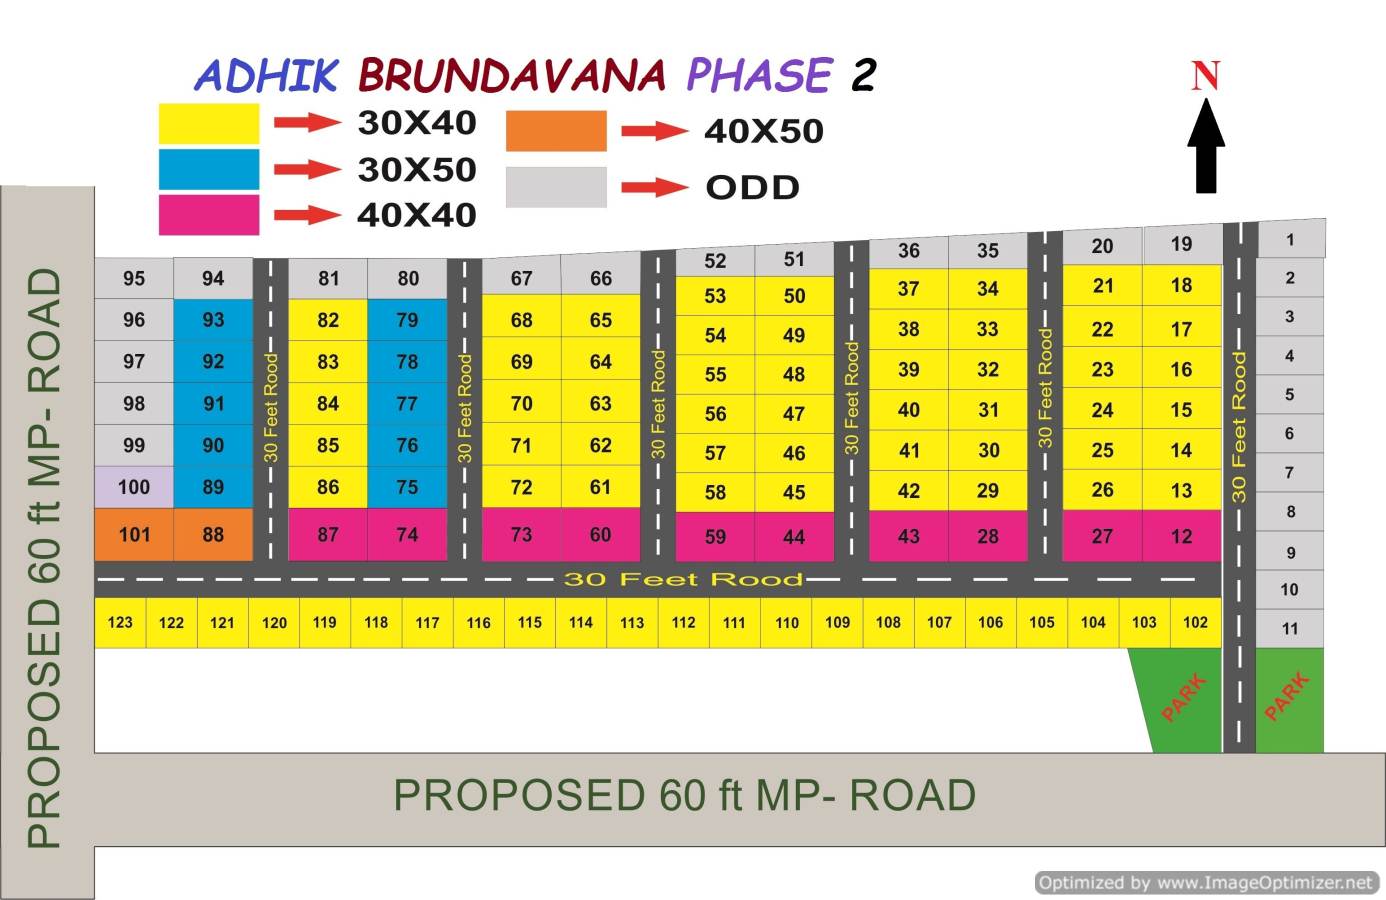 Adhik brundavana phase 2